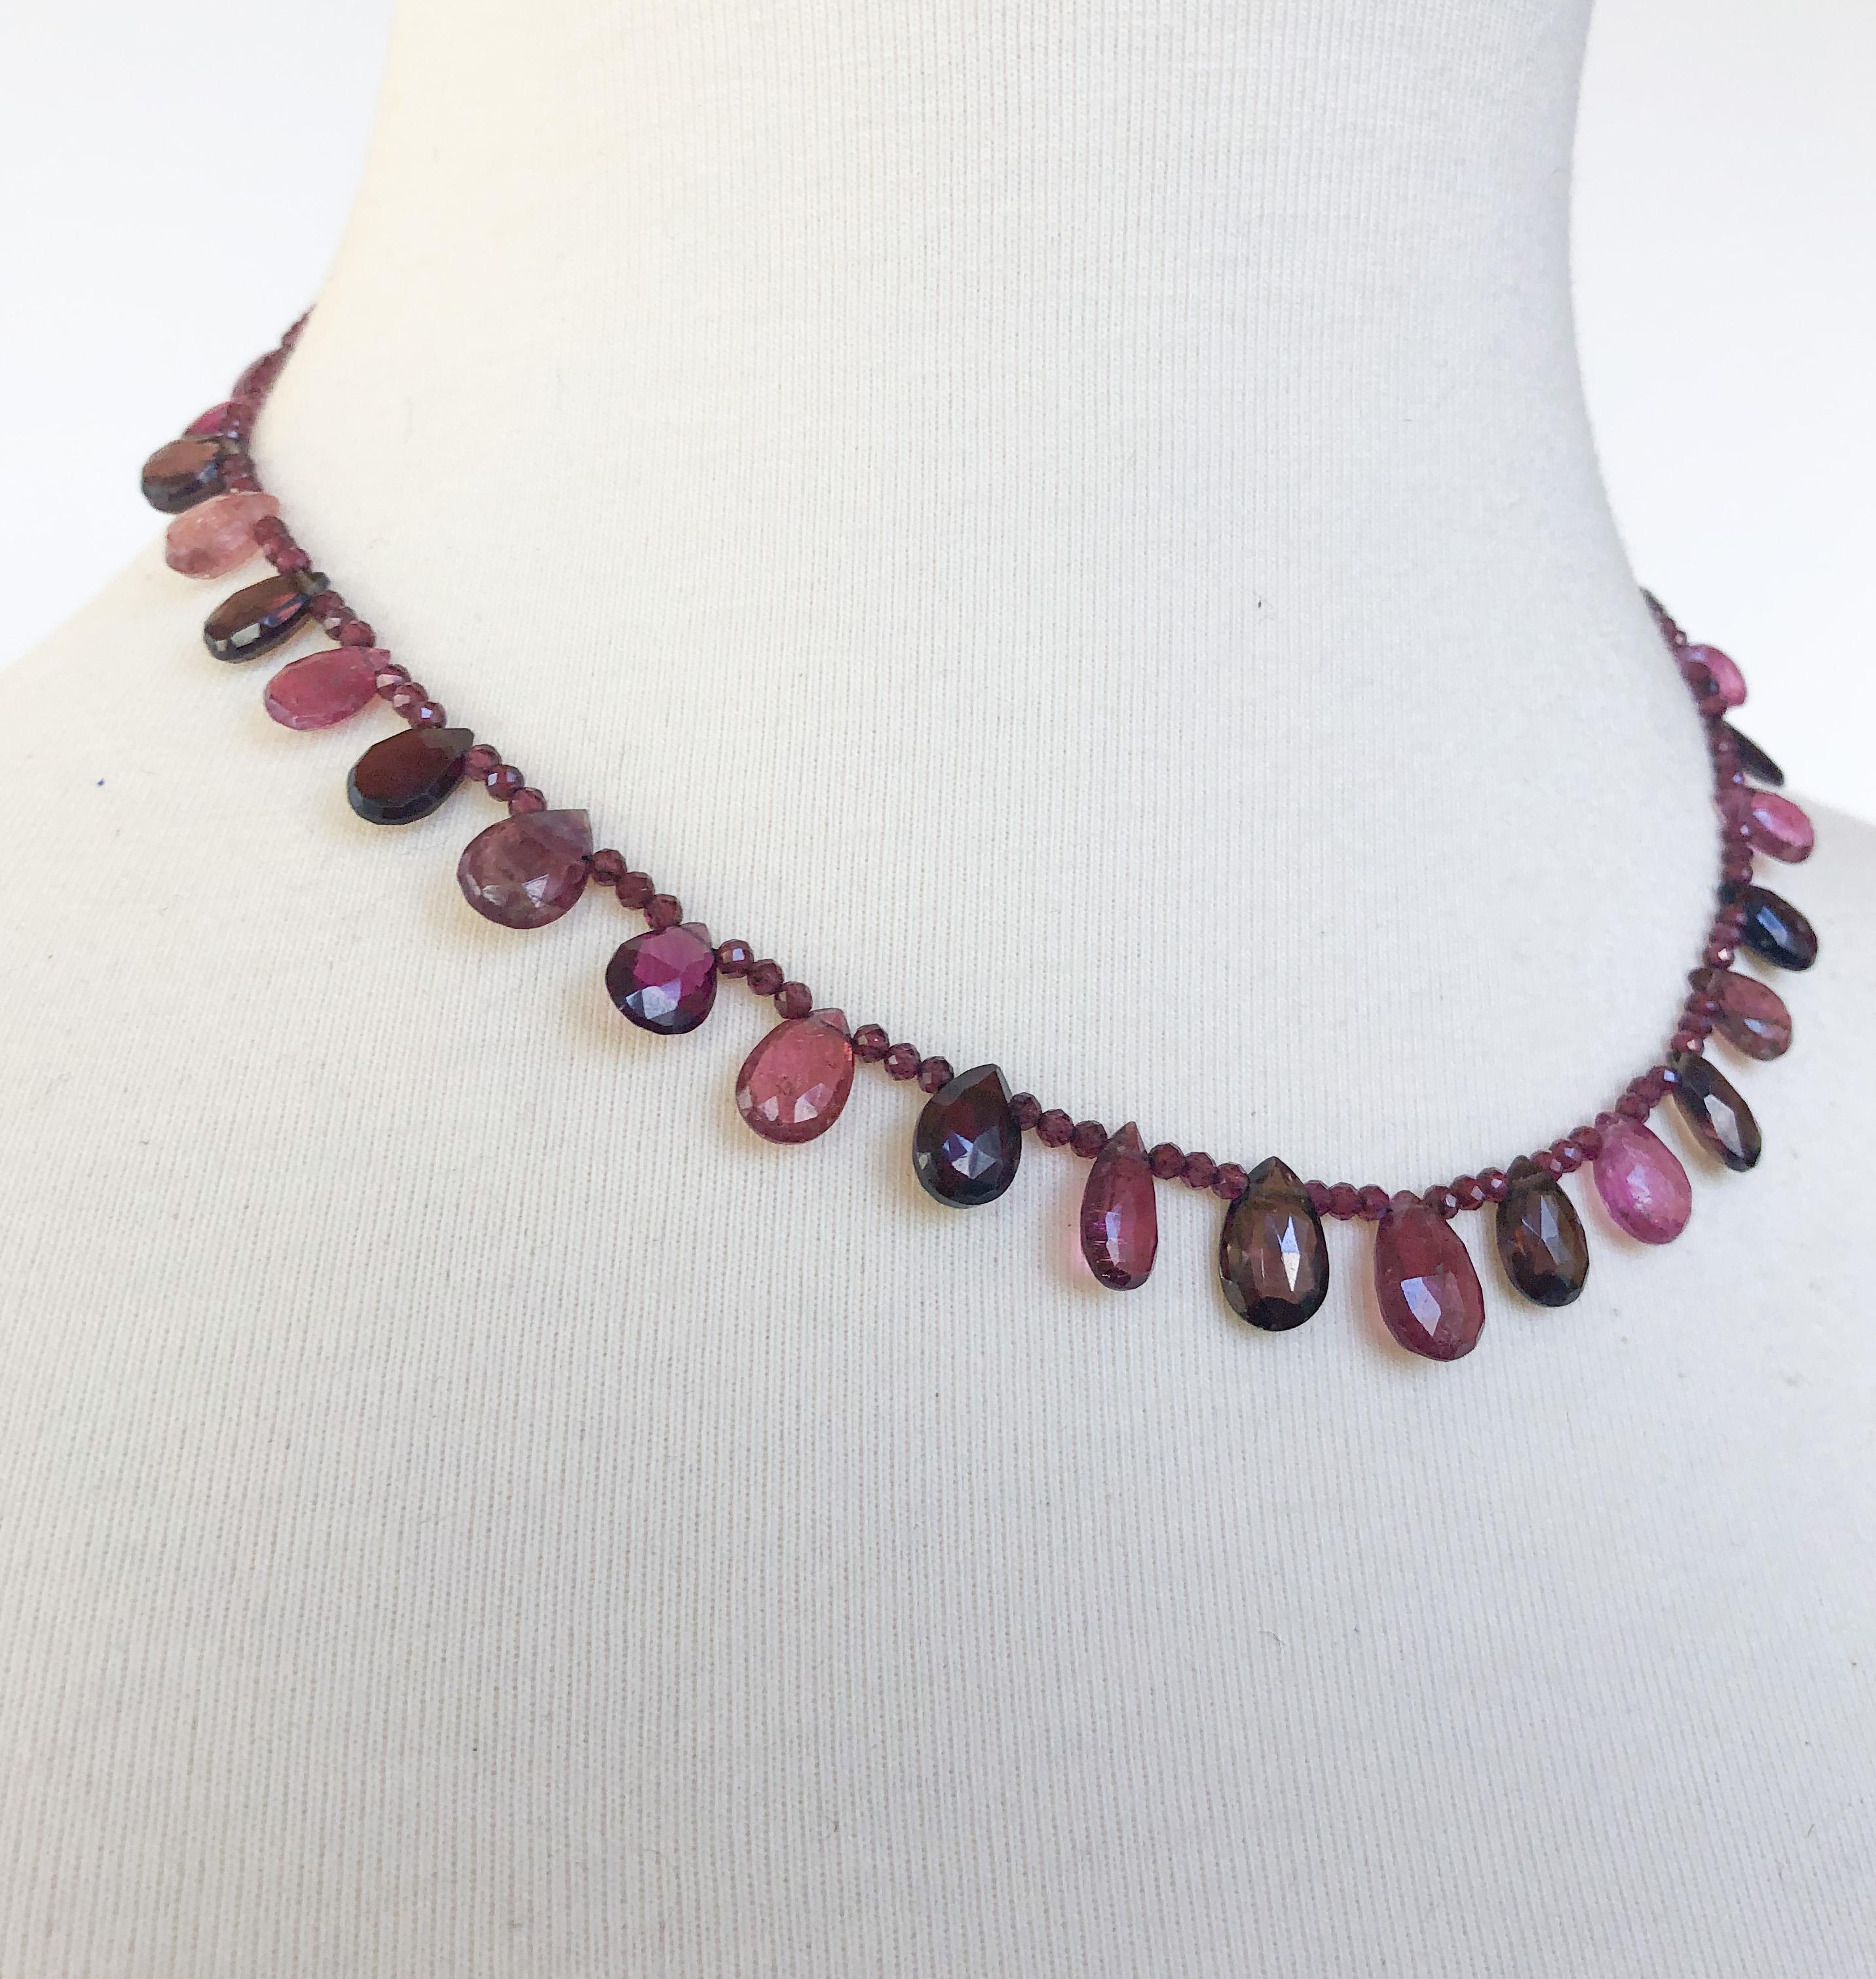 Diese minimalistische Halskette besteht aus Granat und mehrfarbigen rosa Turmalin-Brioletten. Der Karabinerverschluss ist silbervergoldet und sehr sicher. Die Halskette ist 15,5 cm lang, kann aber auf Wunsch auch länger gemacht werden. 